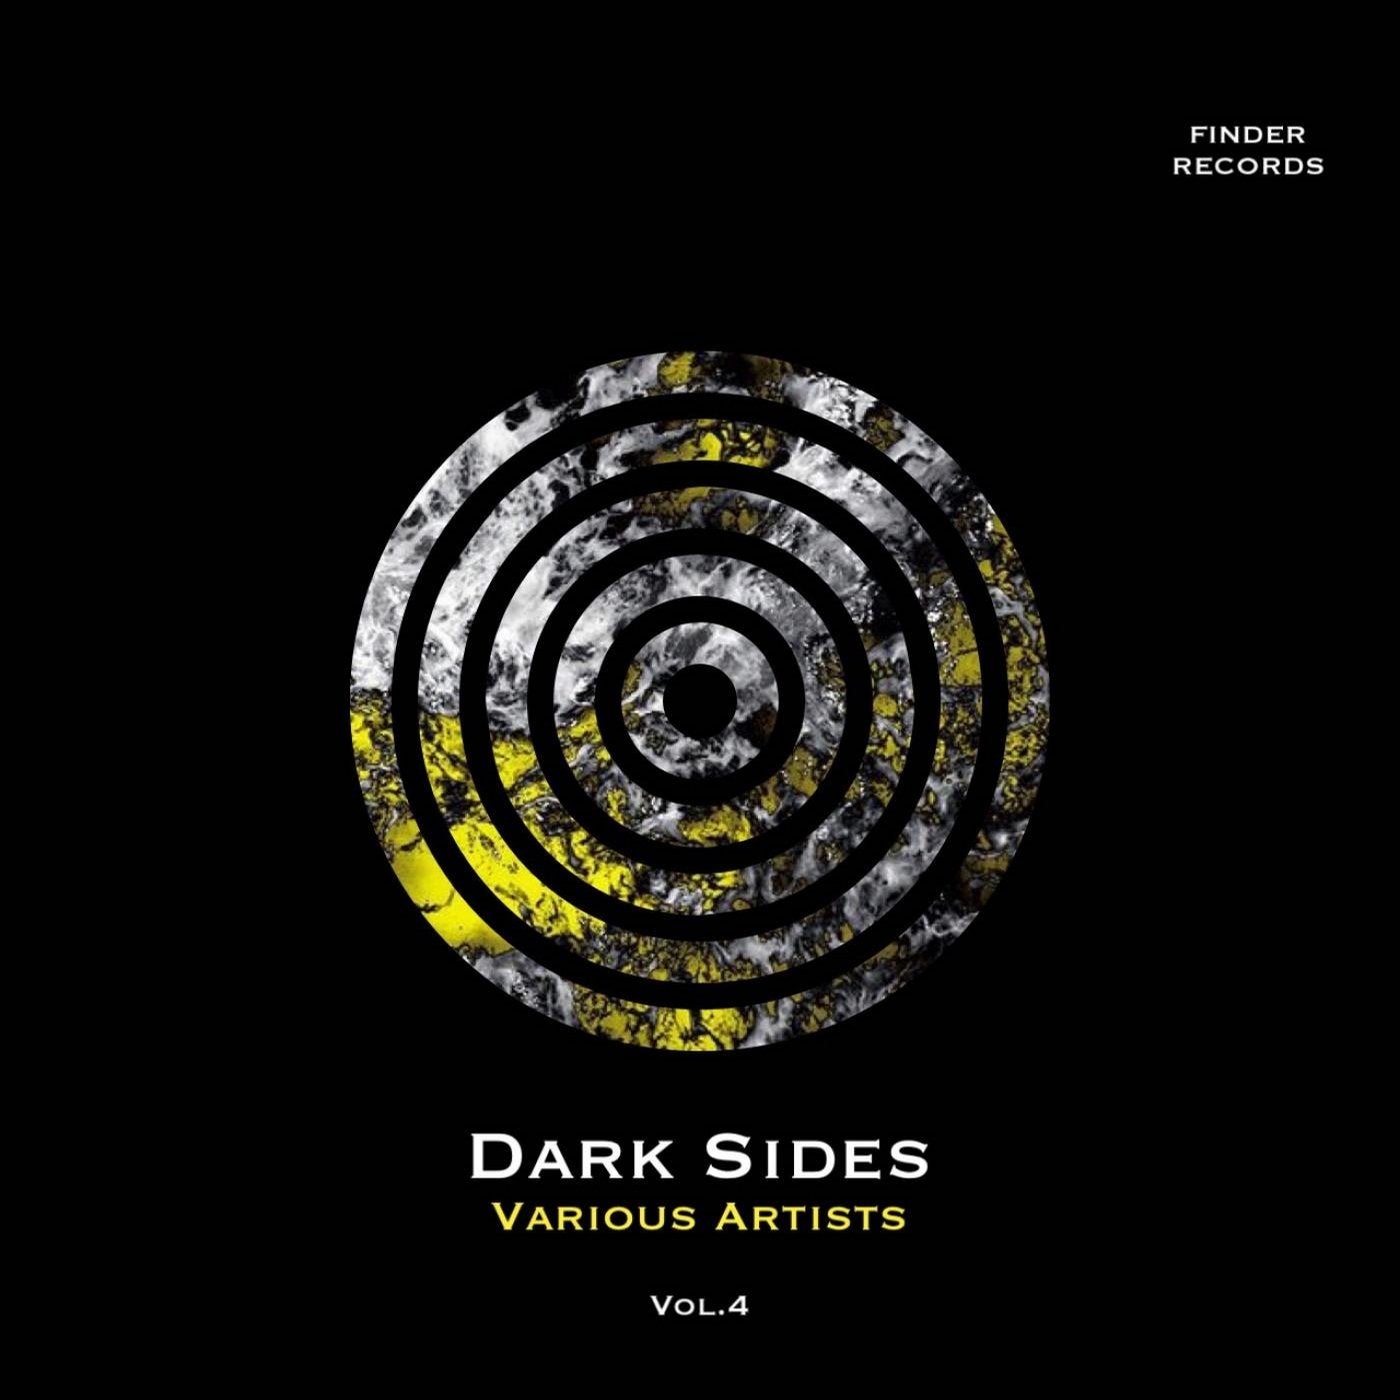 Dark Sides Vol.4